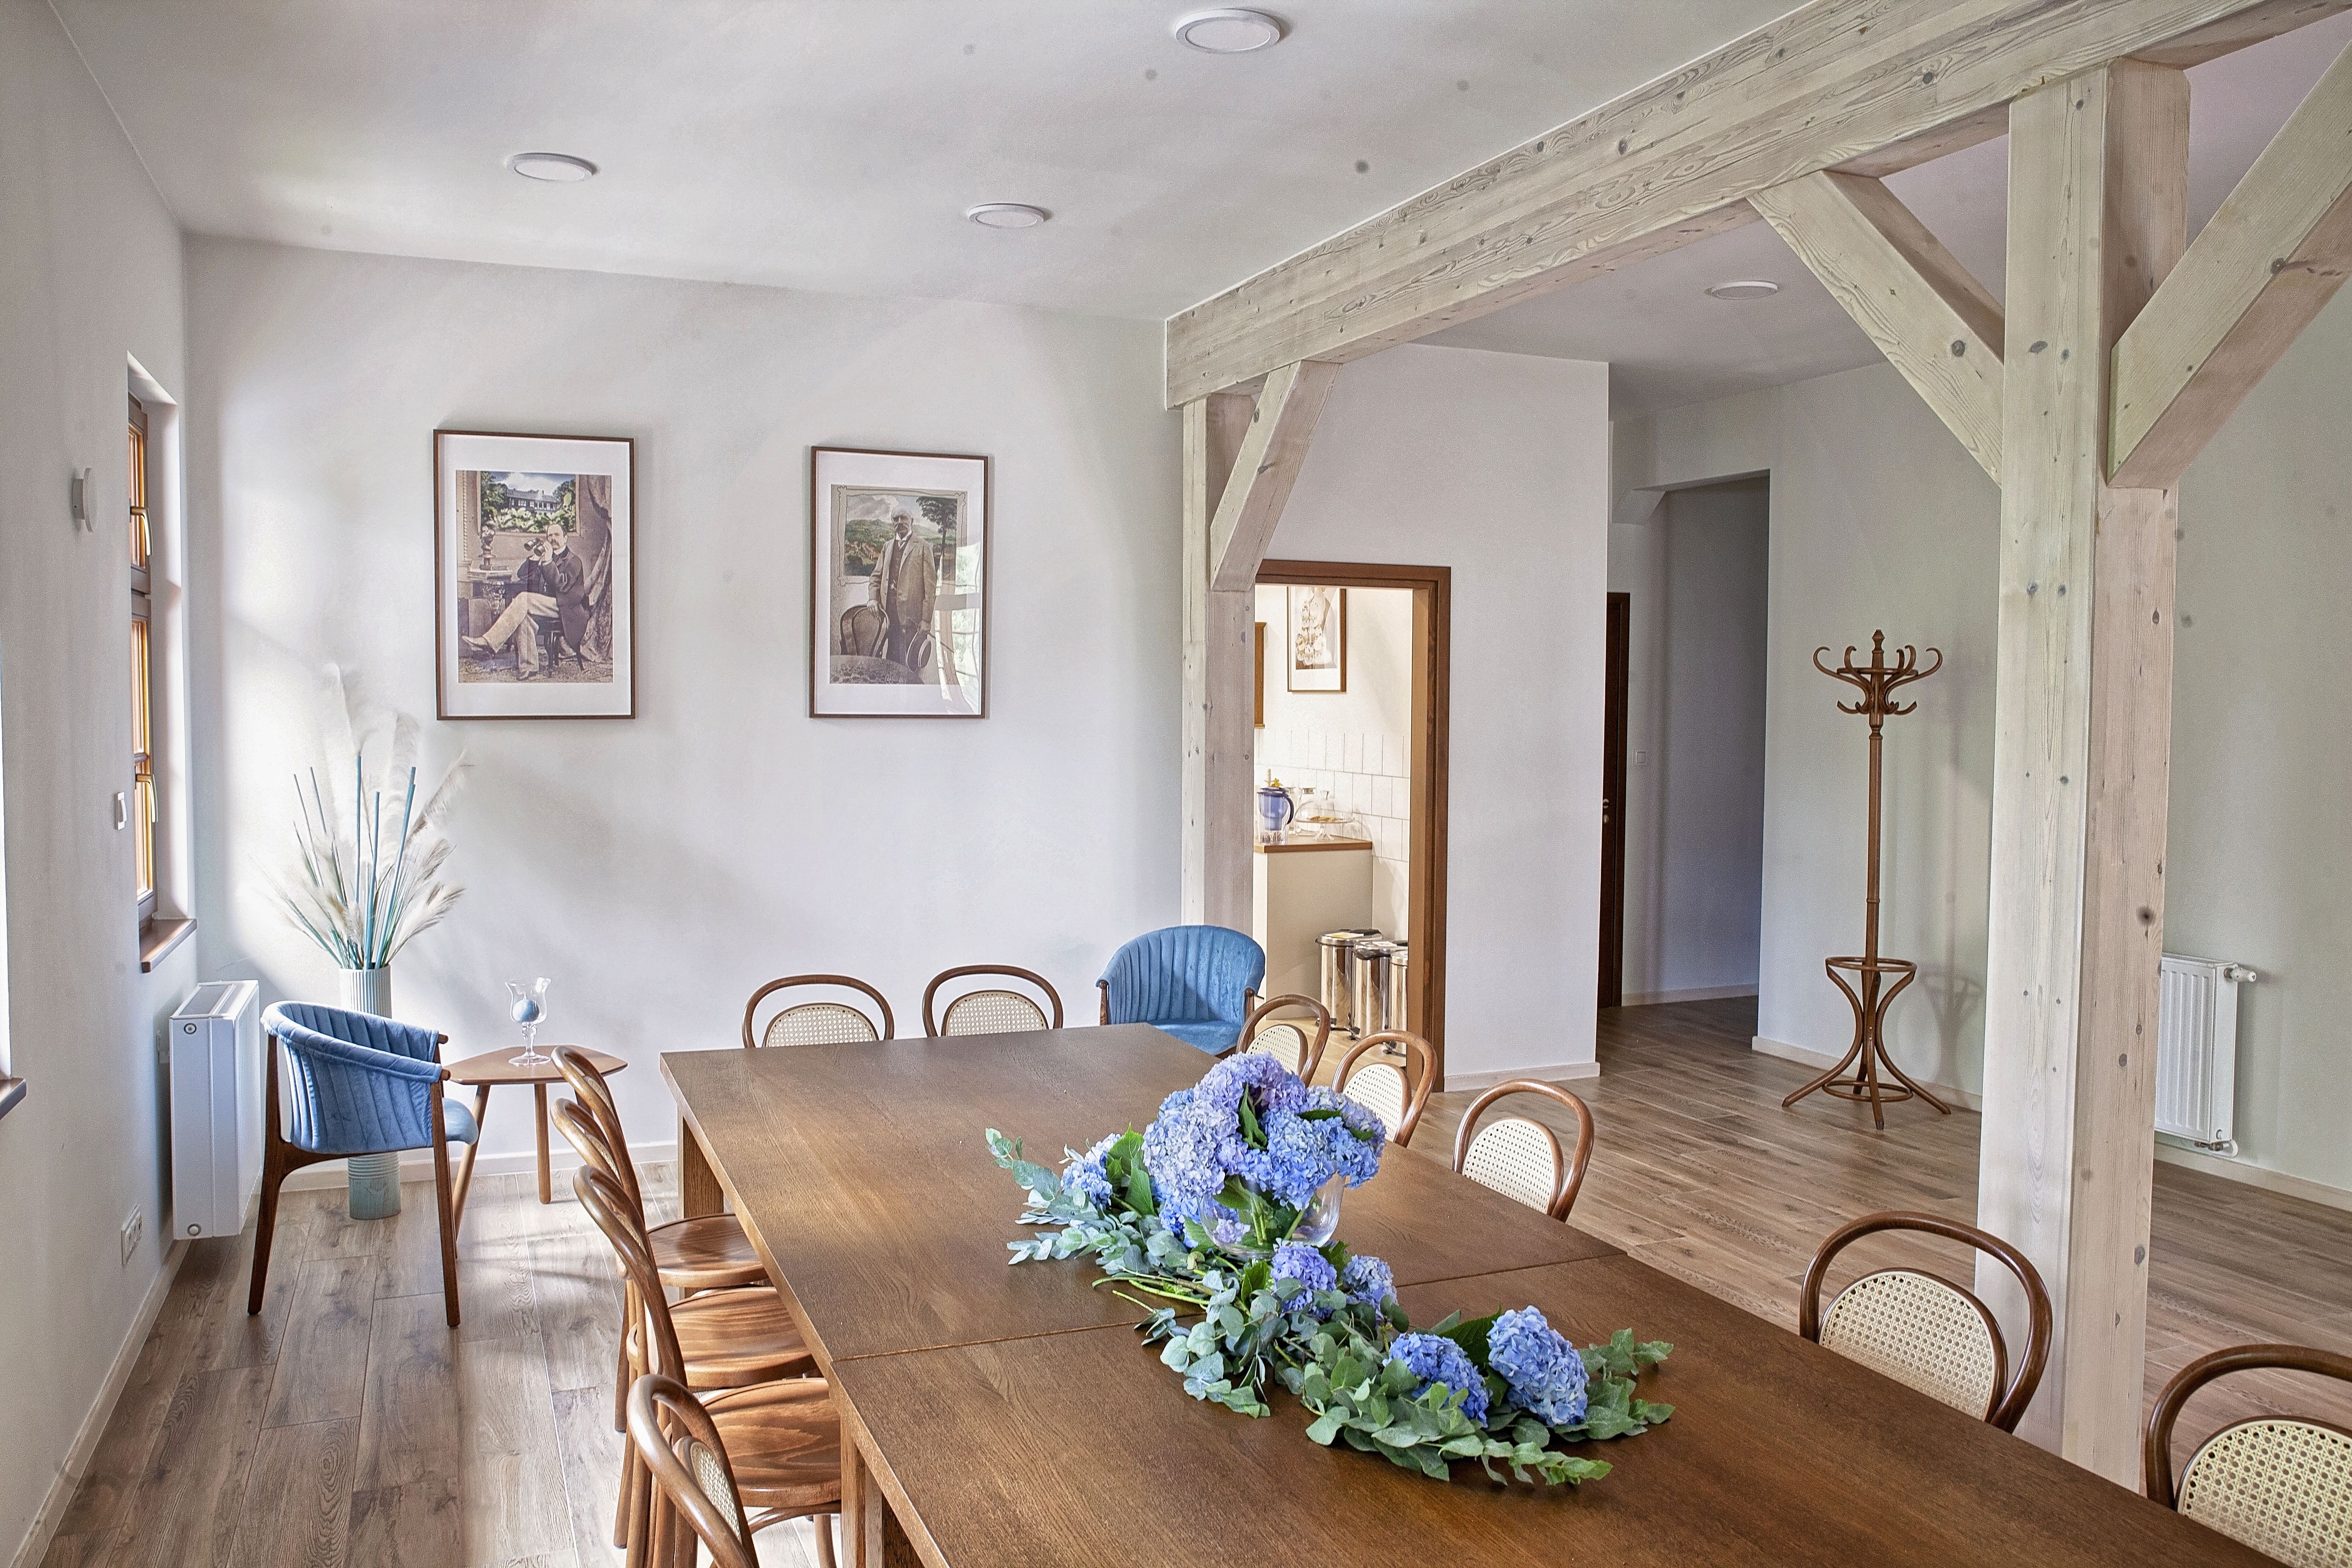 długi drewniany stół z krzesłami, na stole kwiaty, w tle widok na wiszące na ścianie obrazy